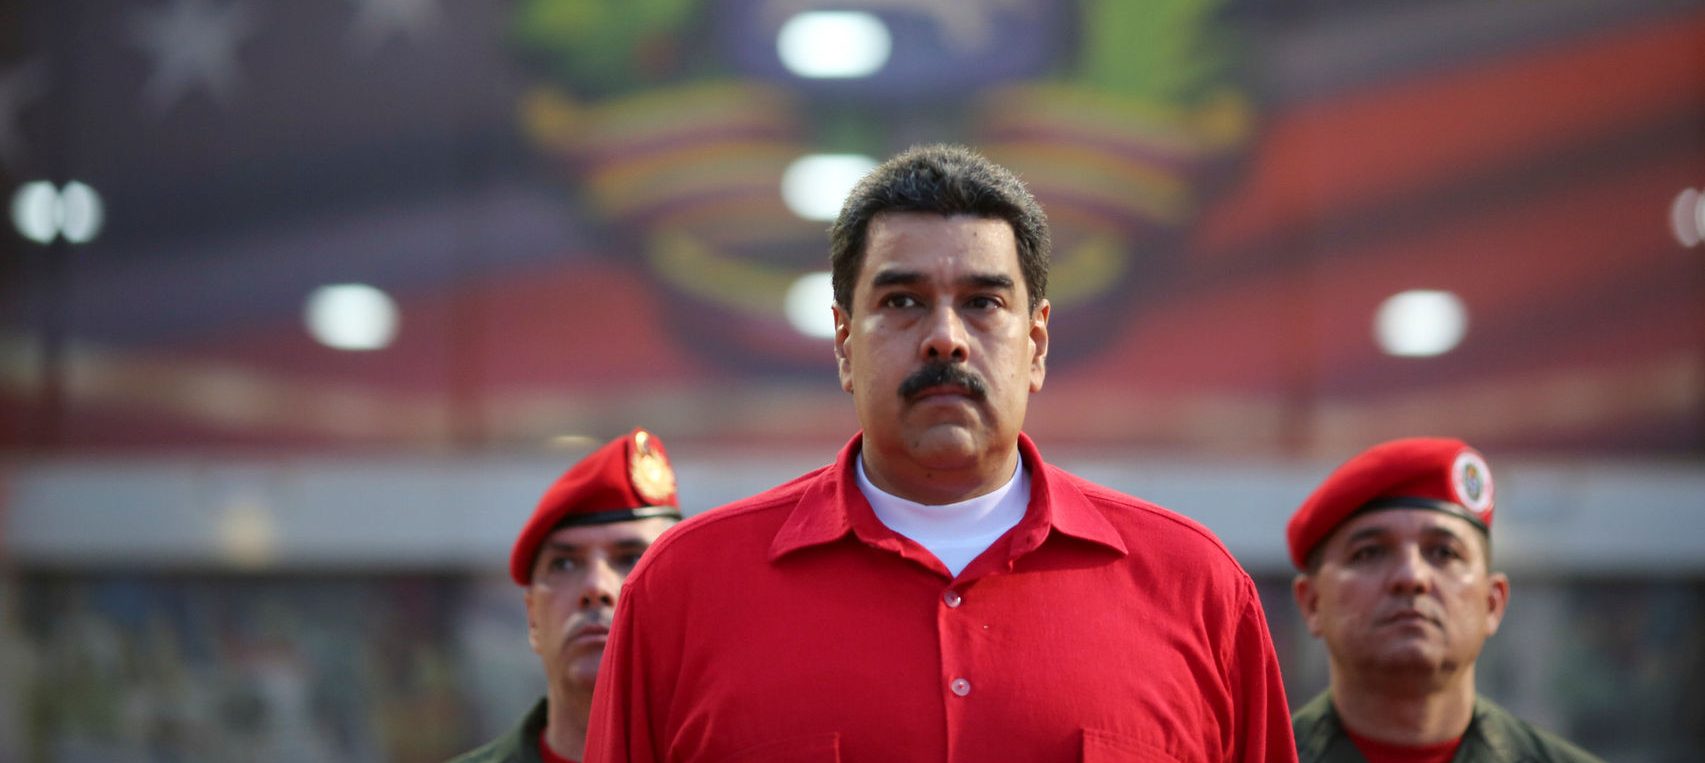 La importancia de la resolución 1078 de la OEA o la deslegitimación del régimen de Maduro